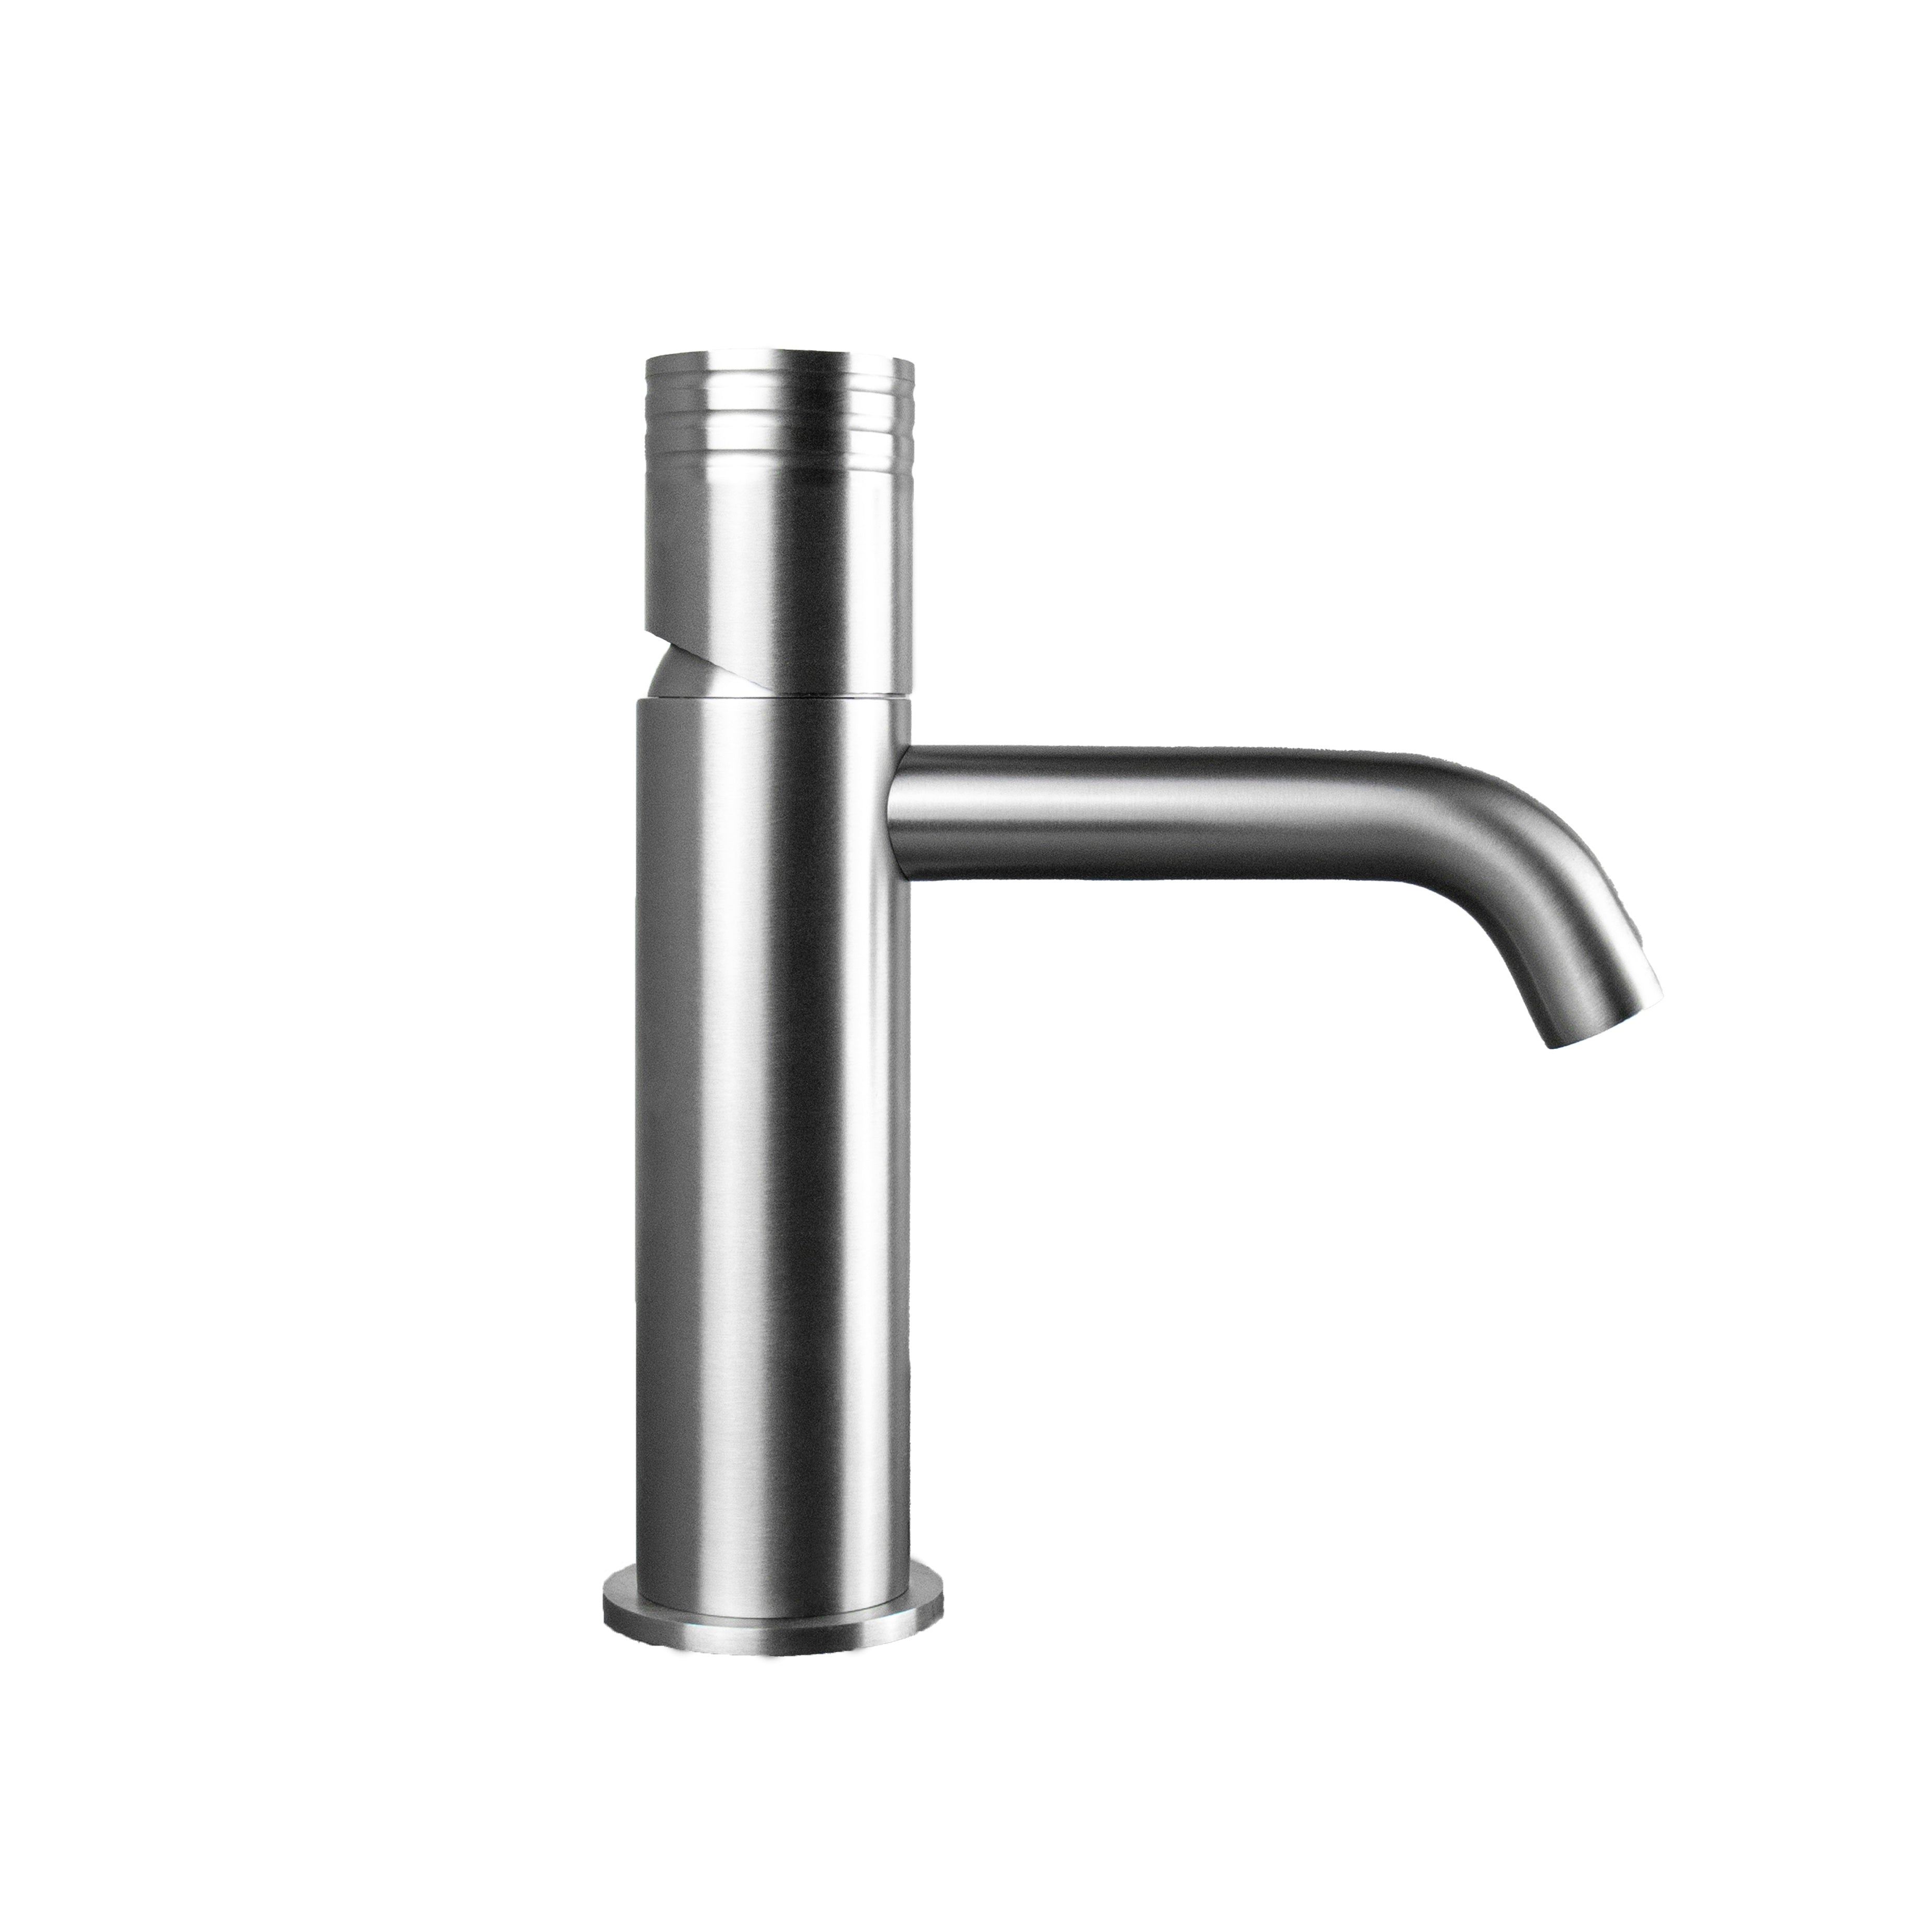 Tubico Loira rubinetto miscelatore per lavabo in acciaio inox 316L satinato Made in Italy T34119S